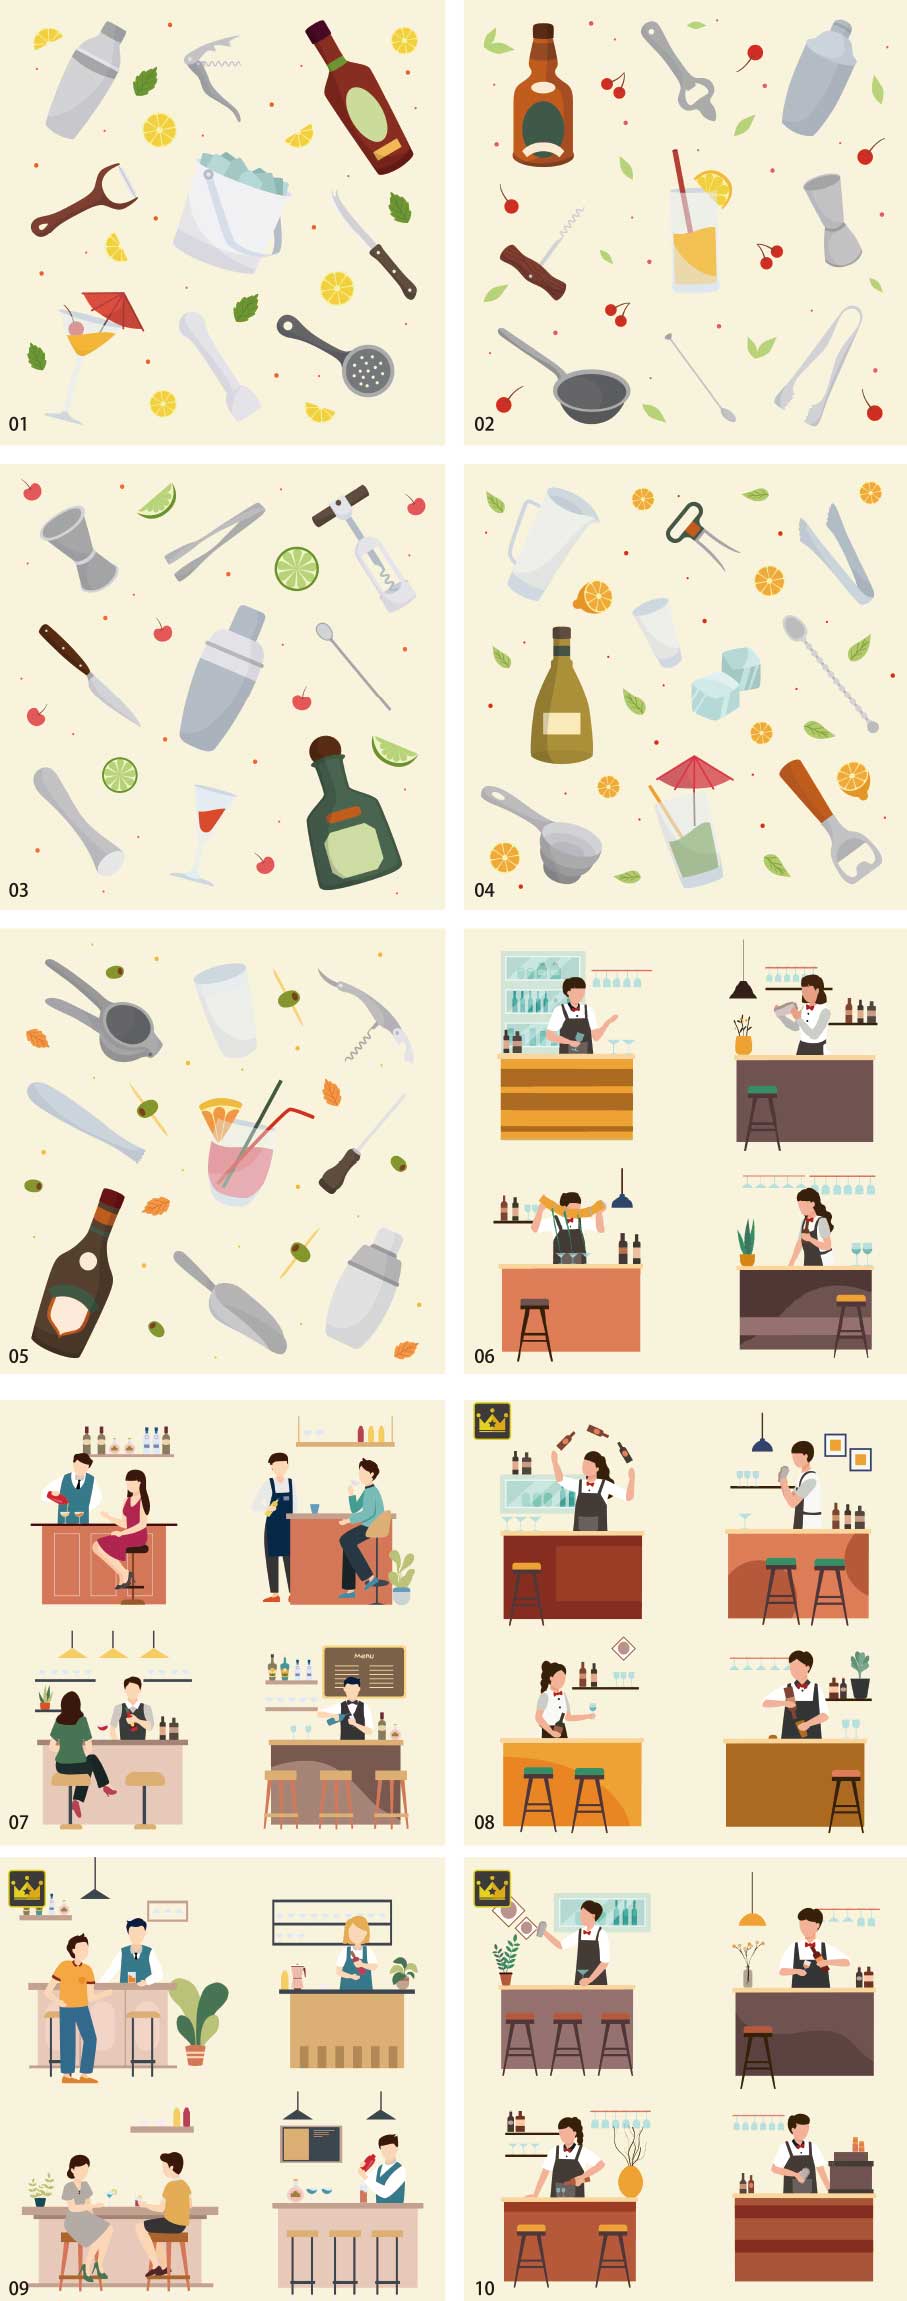 Bartender Illustration Collection